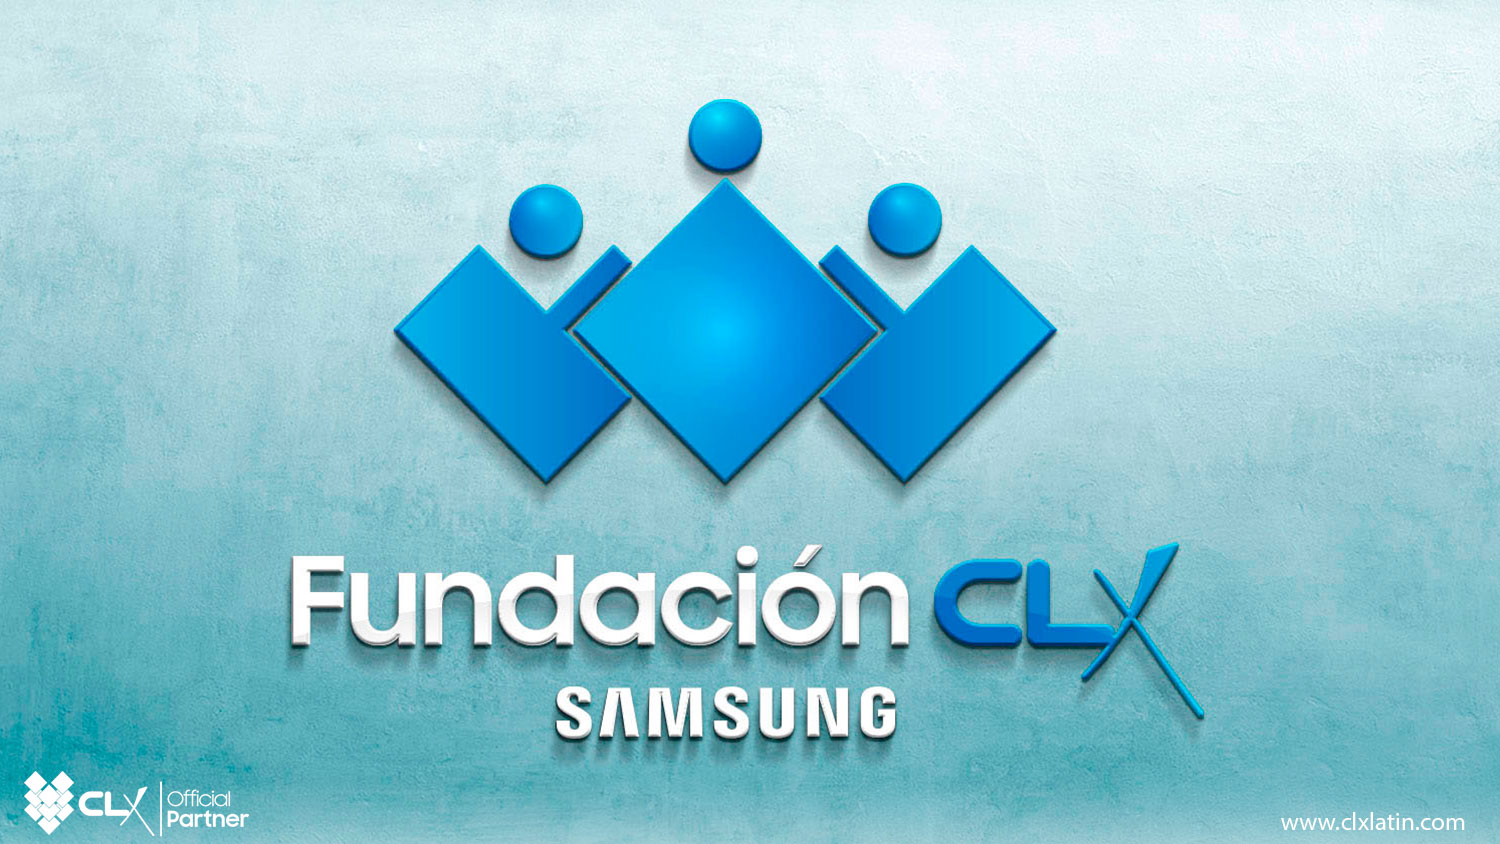 Fundación CLX Samsung - CLX Latin